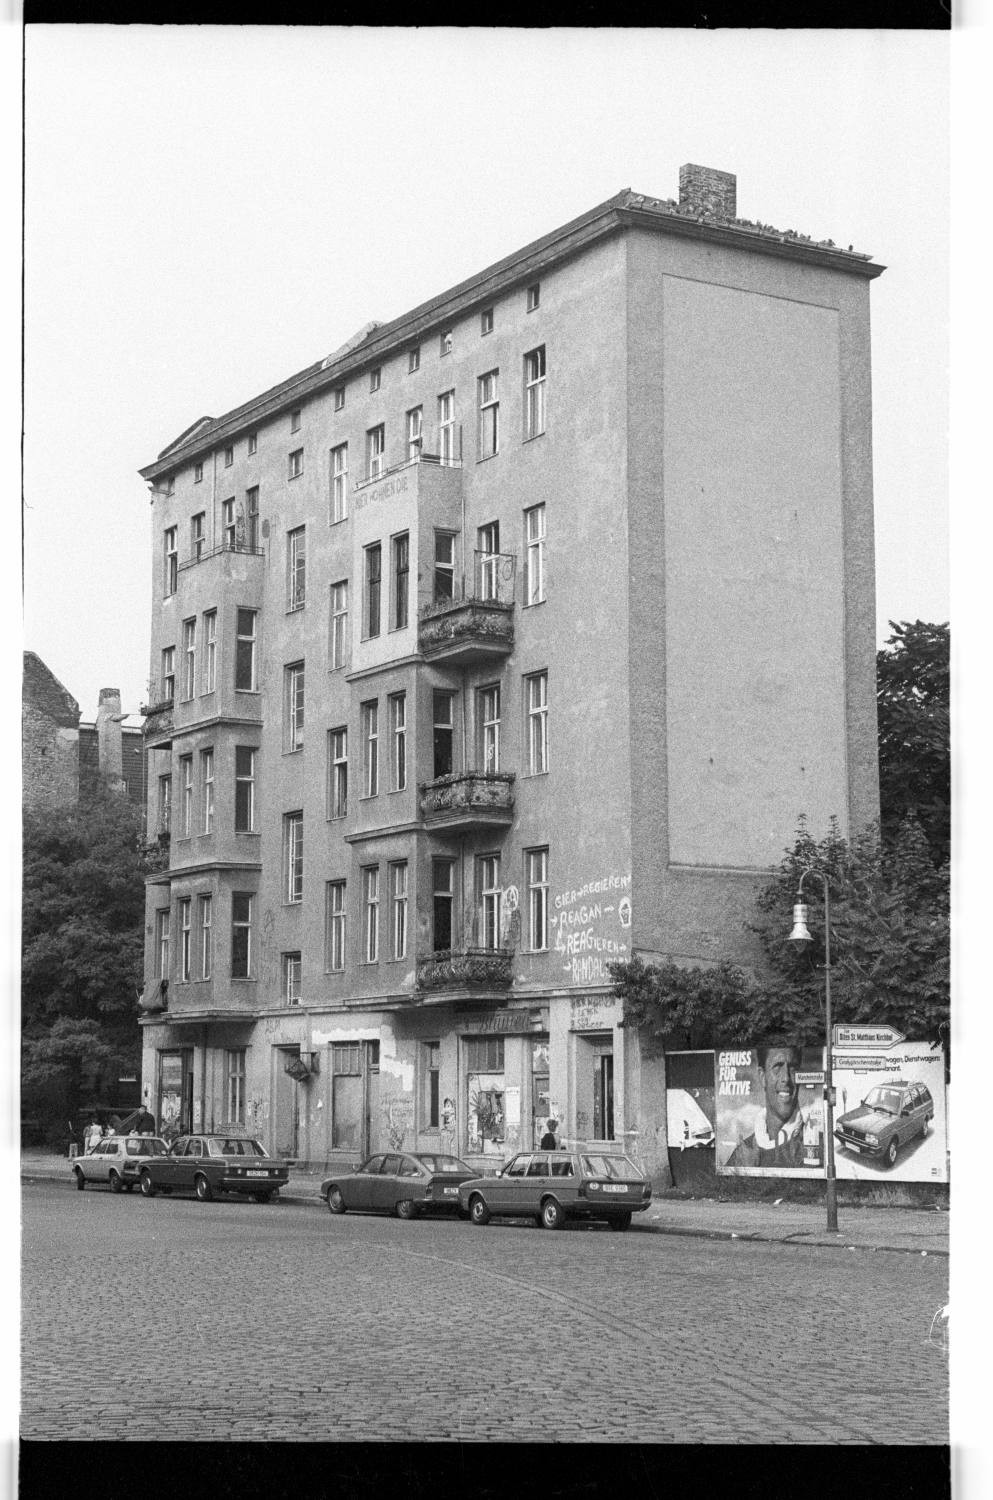 Kleinbildnegative: Besetztes Haus, Mansteinstr. 10, 1983 (Museen Tempelhof-Schöneberg/Jürgen Henschel RR-F)